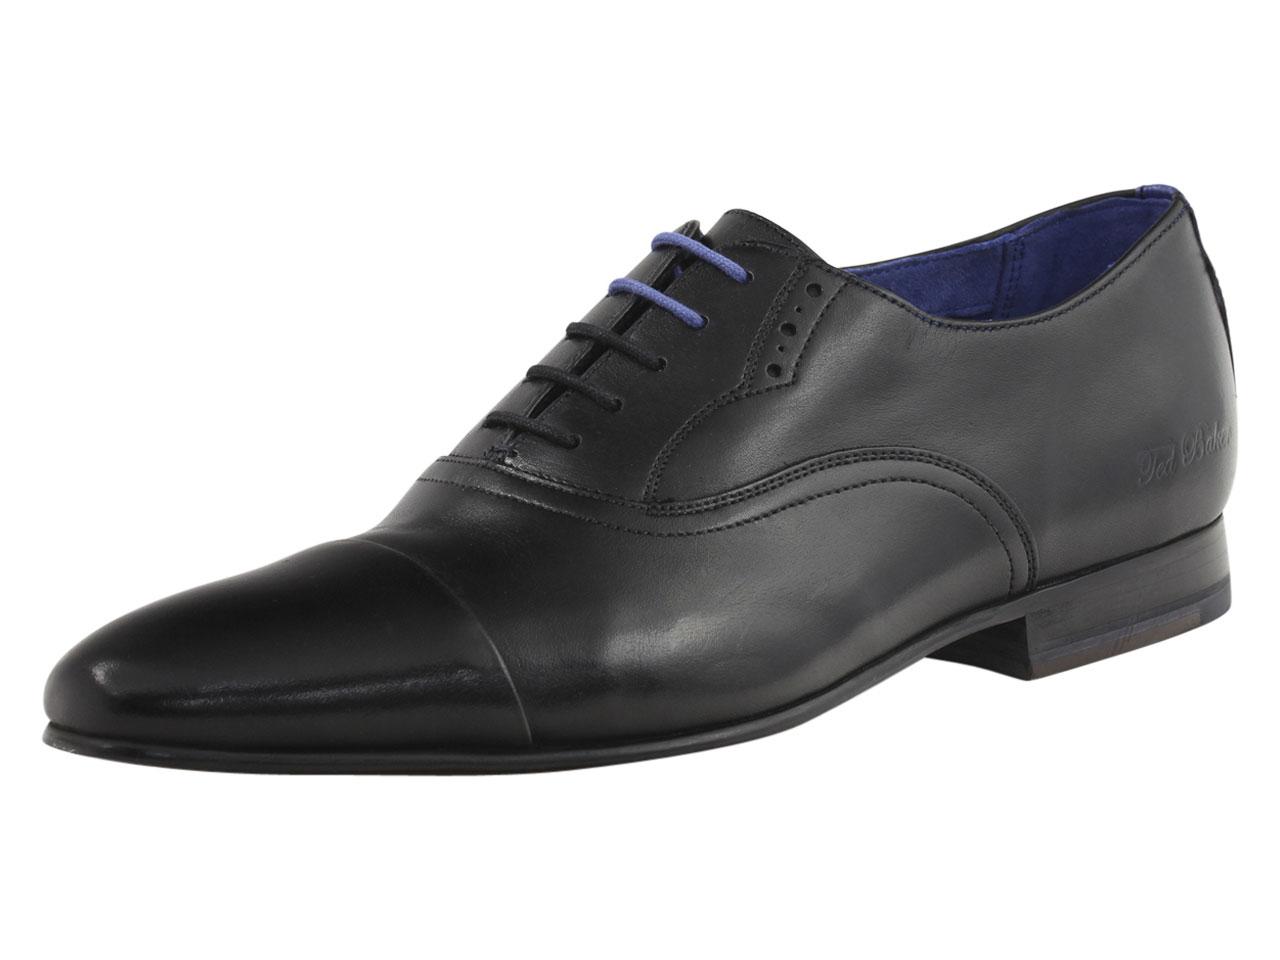 Ted Baker Men's Murain Fashion Oxfords Shoes - Black - 10 D(M) US